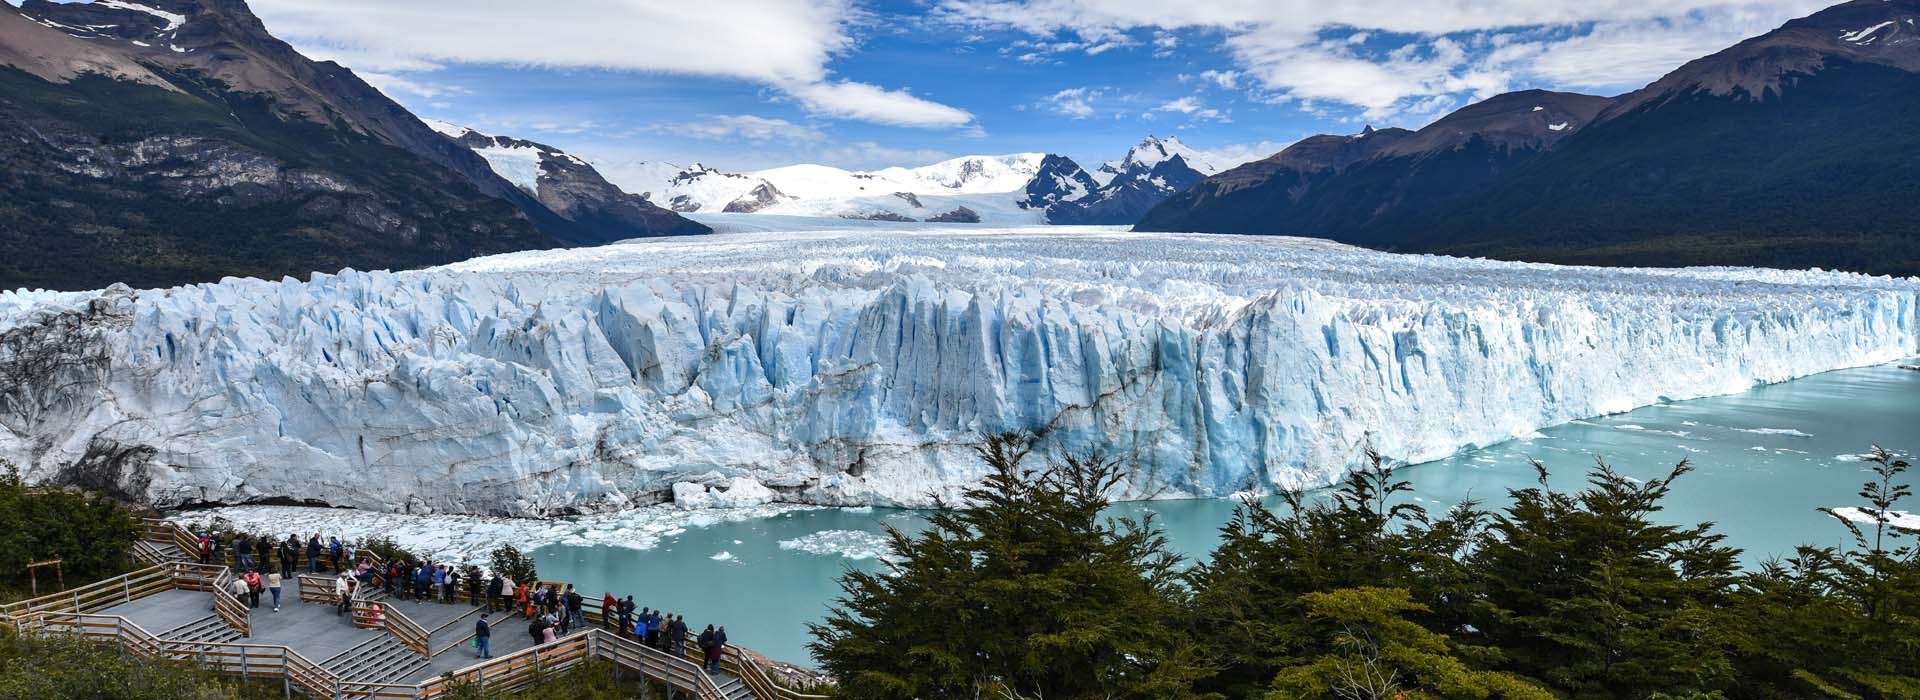 Visiter Le Glacier de Perito Moreno - Argentine